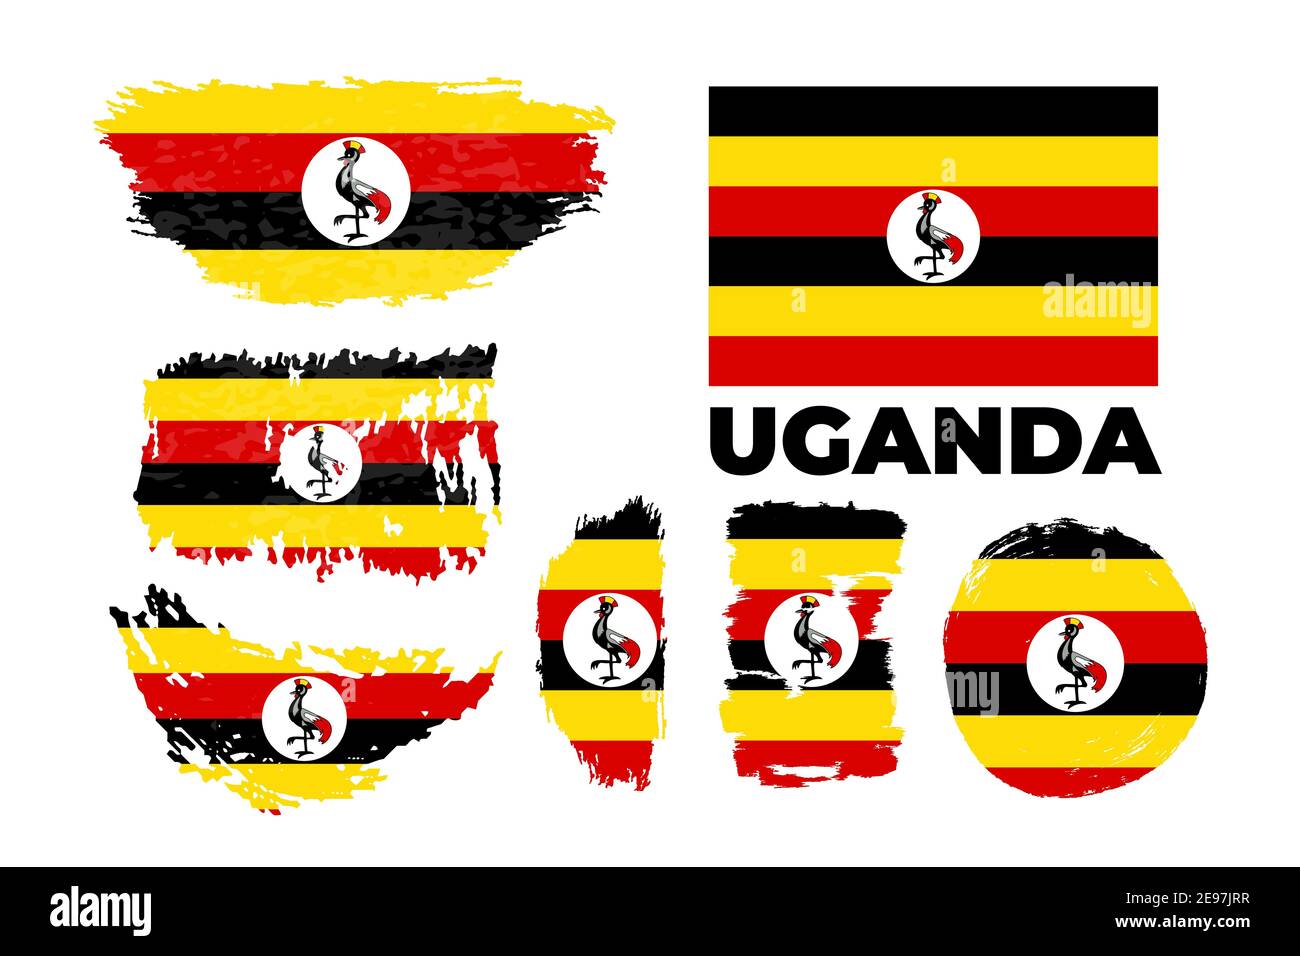 Uganda flag, vector illustration on a white background. Stock Vector